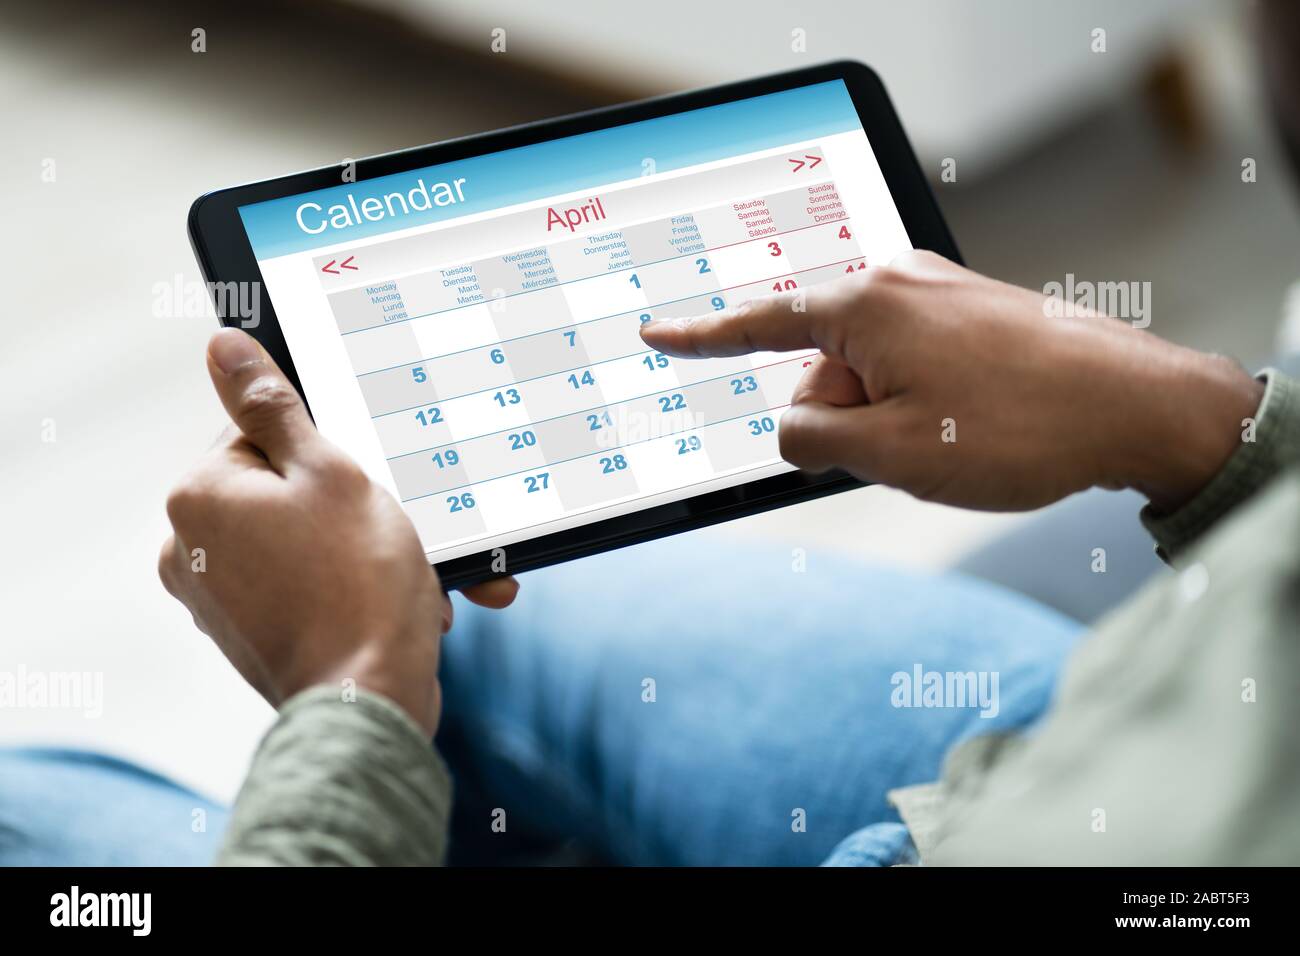 Immagine ritagliata di giovane che utilizza il calendario sulla tavoletta digitale in casa Foto Stock